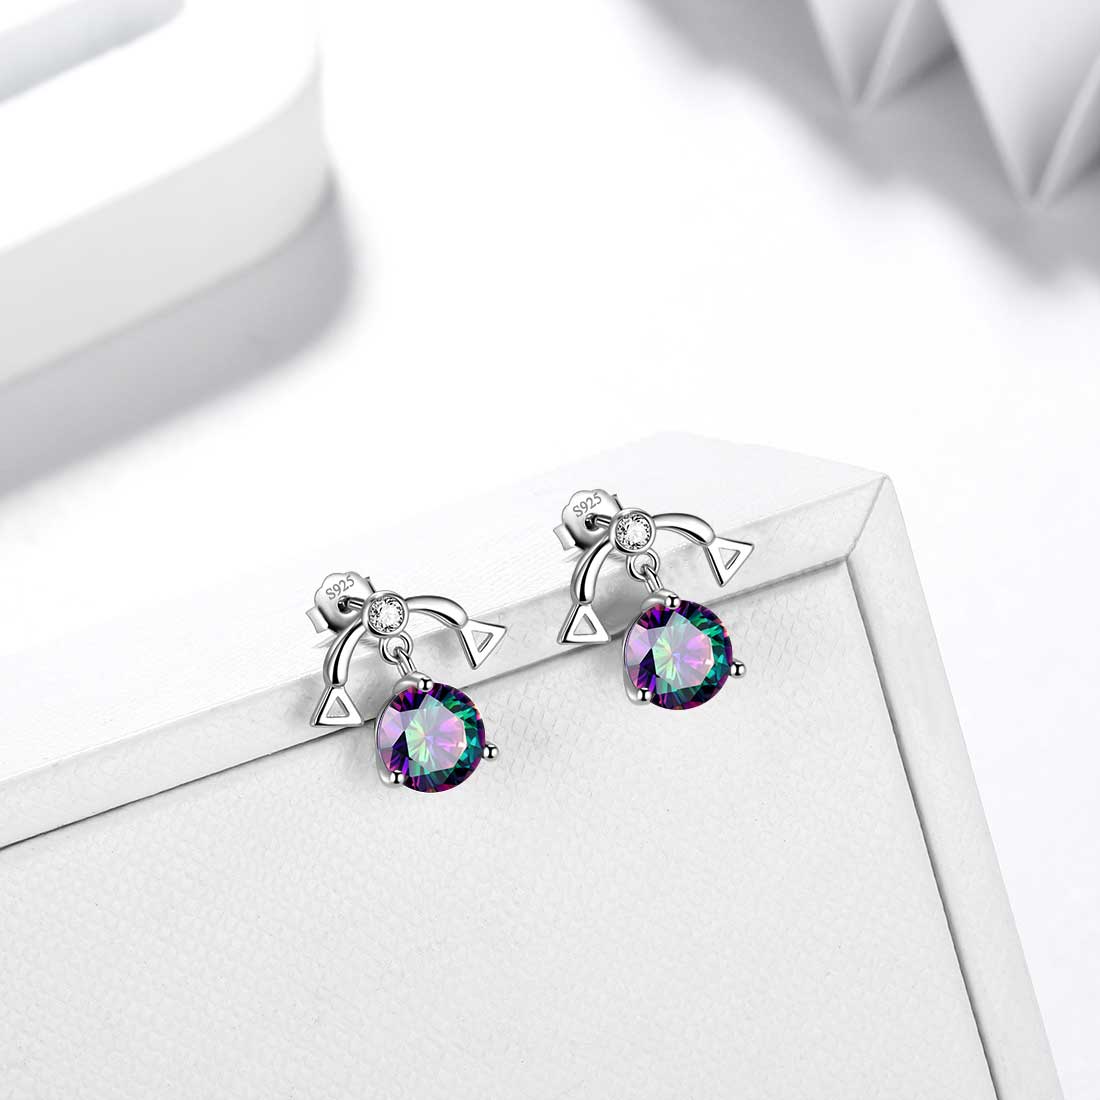 Libra Stud Earrings Sterling Silver Mystic Rainbow Topaz - Earrings - Aurora Tears Jewelry